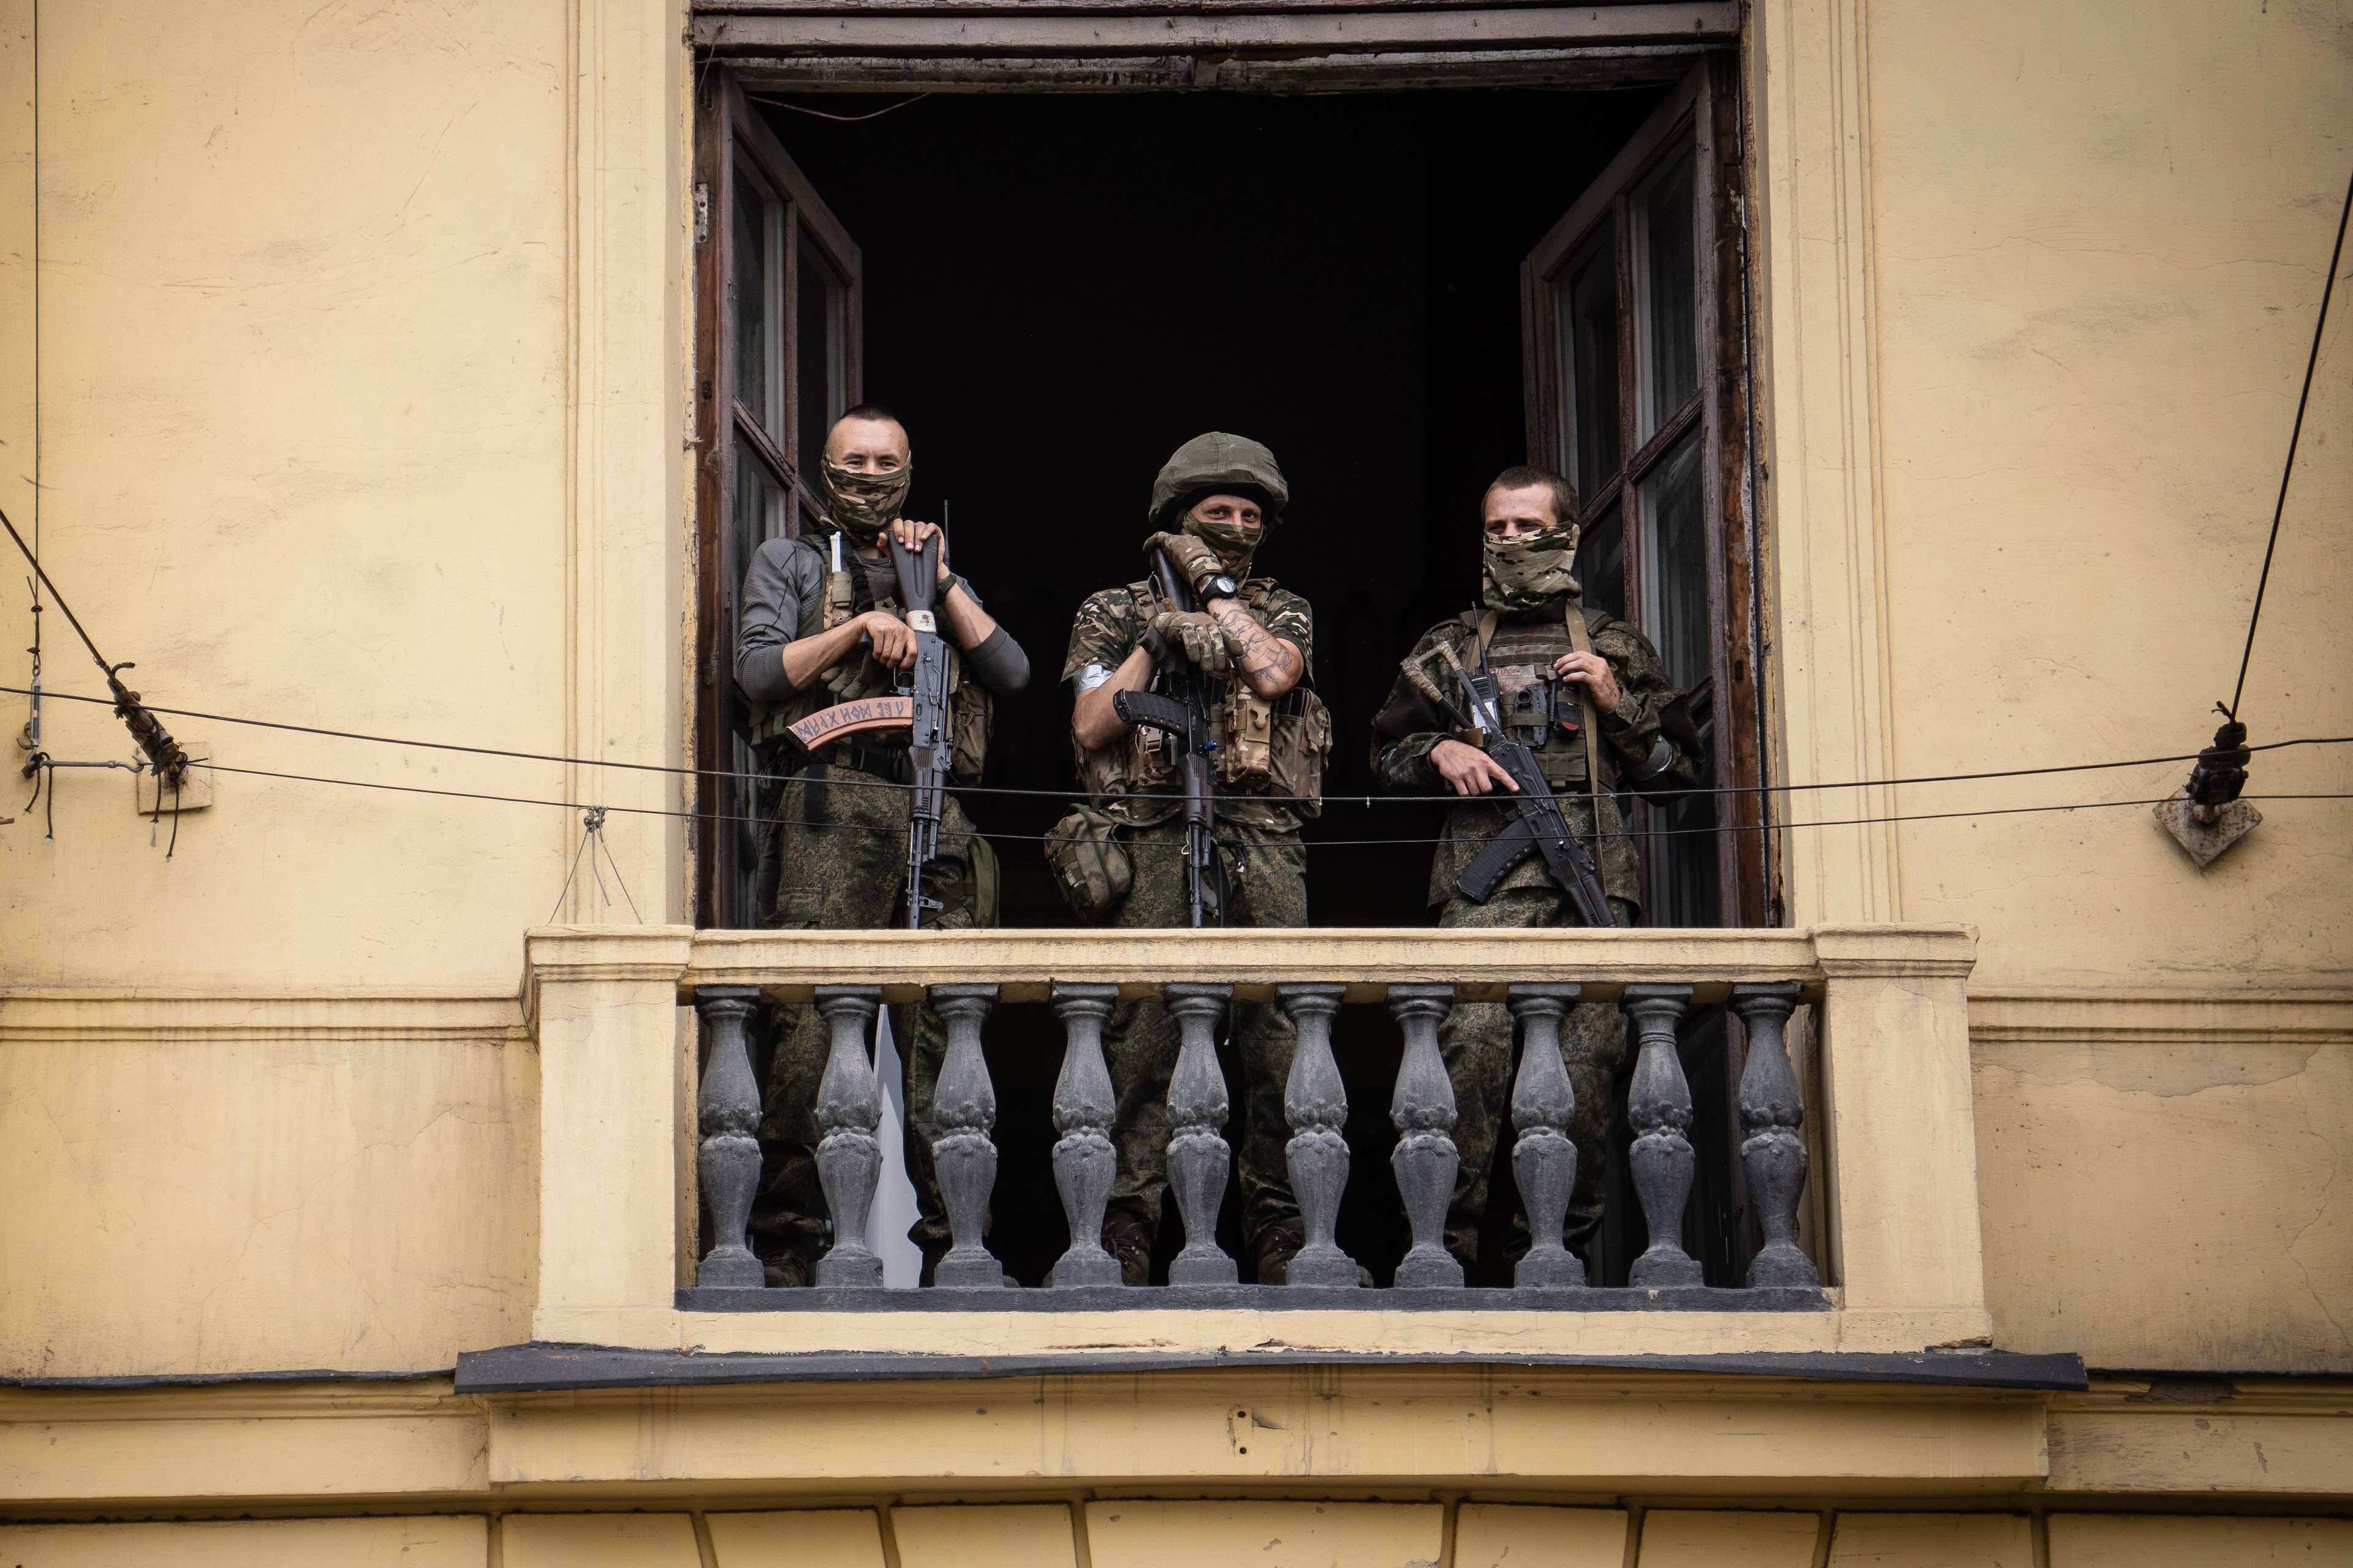 trzech żołnierzy w rynsztunku bojowym mierzy z długiej broni stojąc na balkonie klasycyzującego budynku